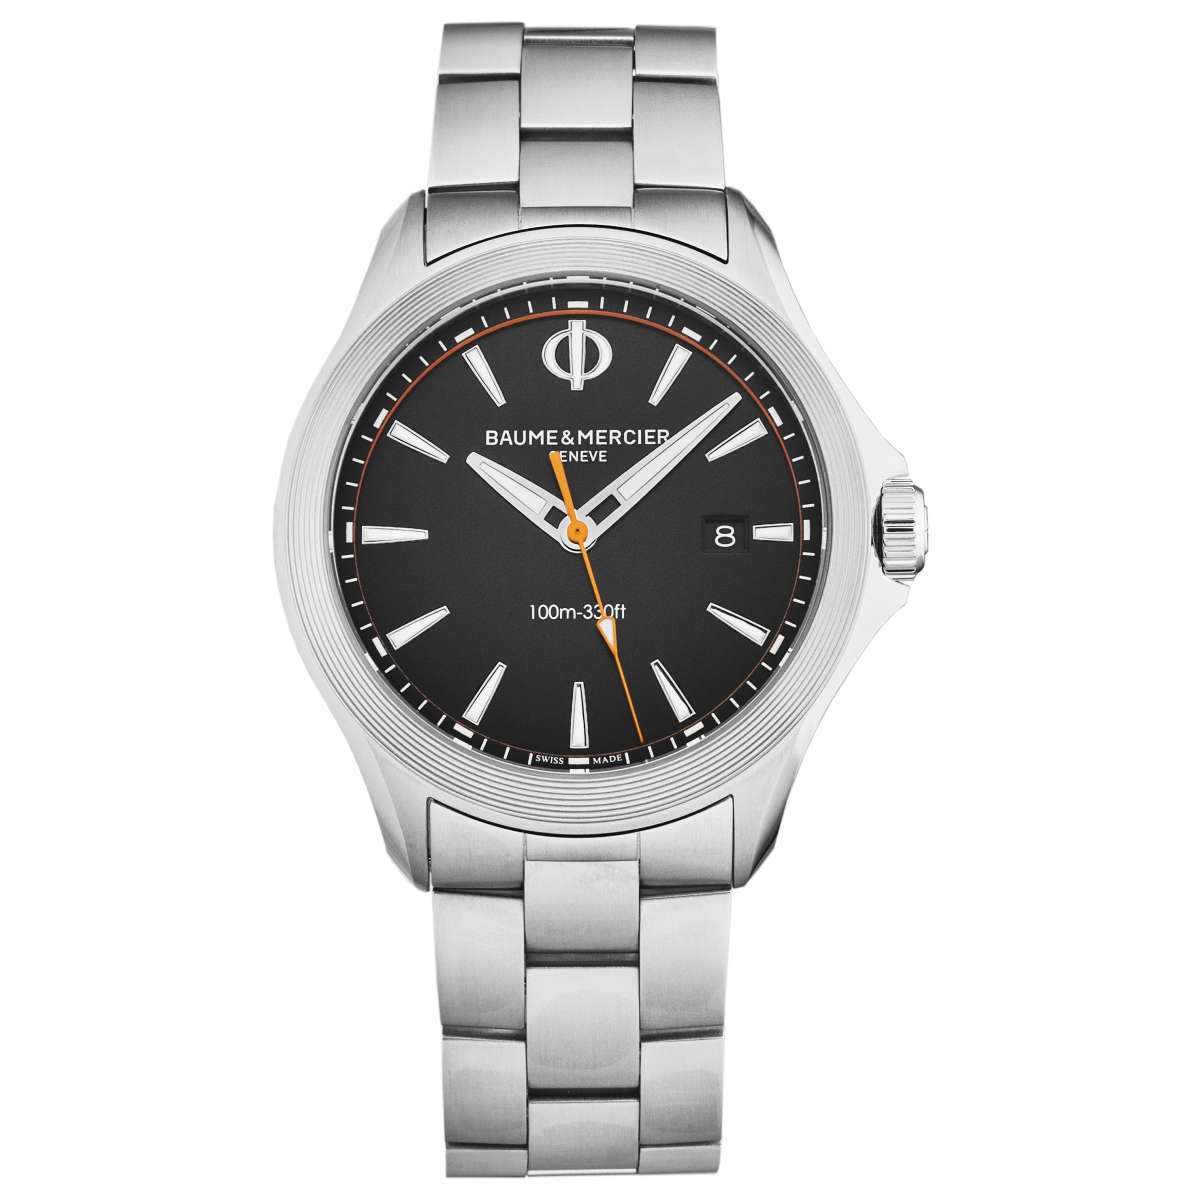 Baume & Mercier Clifton Date Watch on Bracelet $499 + free s/h